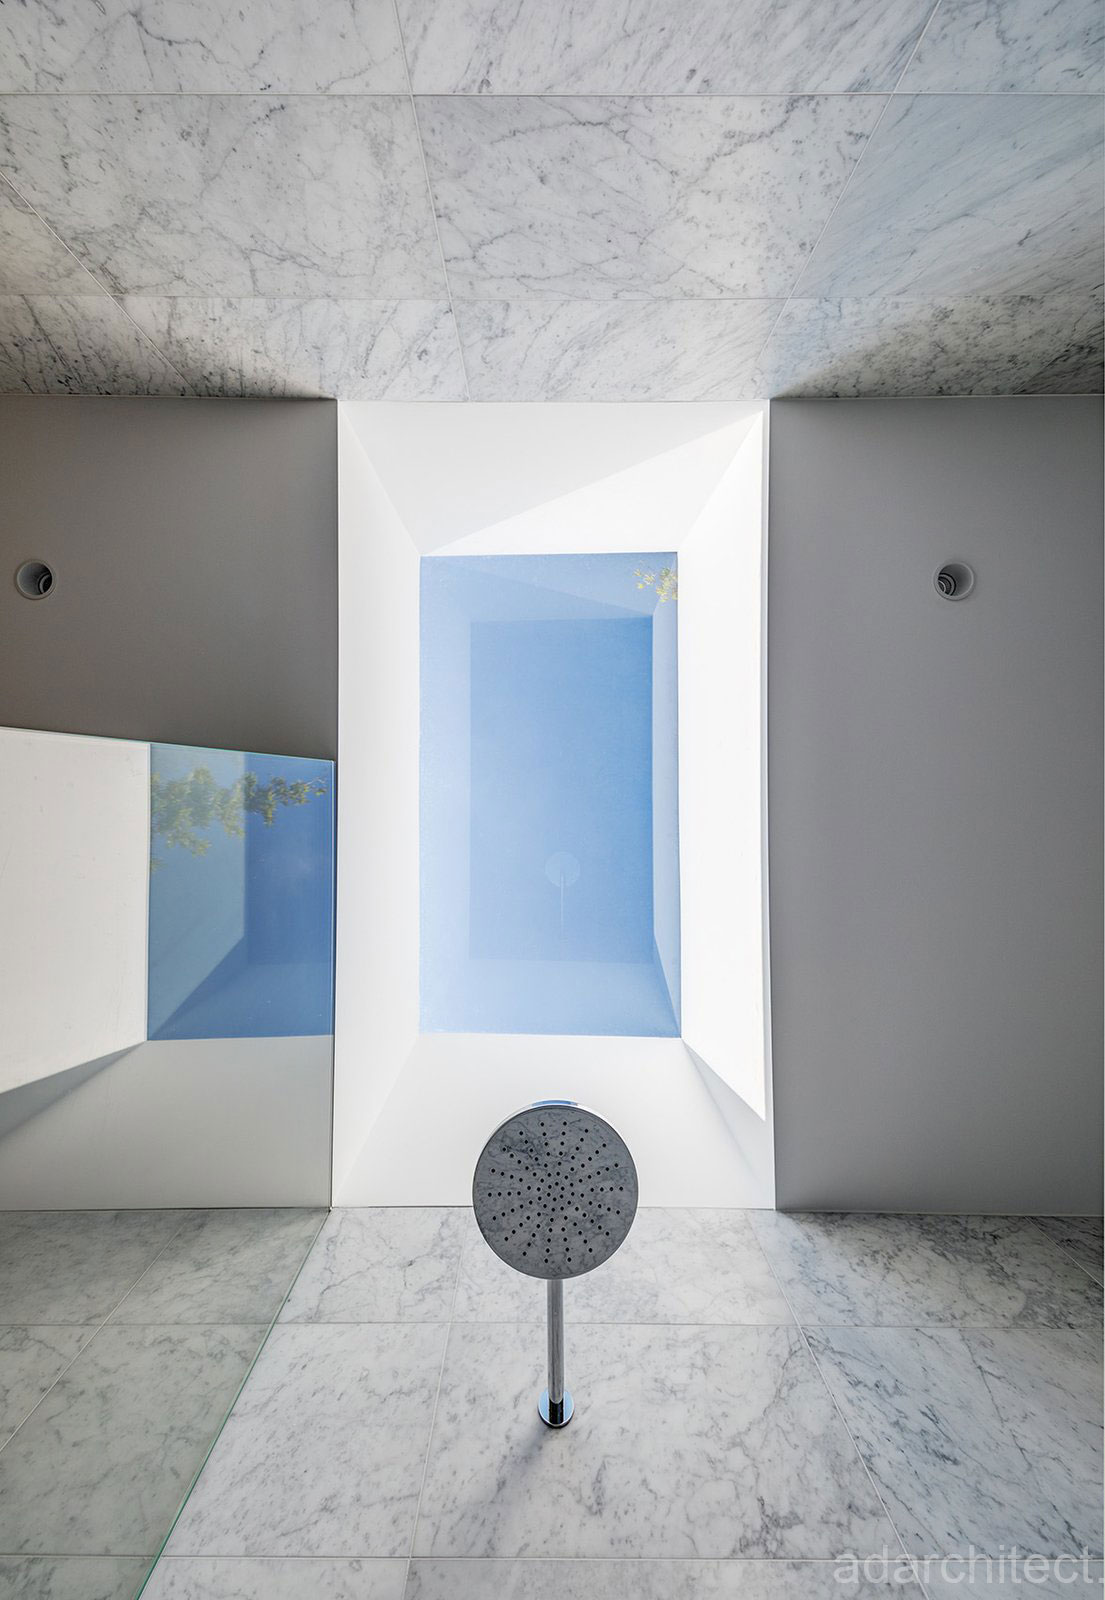 biệt thự nhà vườn 2 tầng: giếng trời cho phòng tắm riêng để thông thoáng không gian nhỏ hẹp